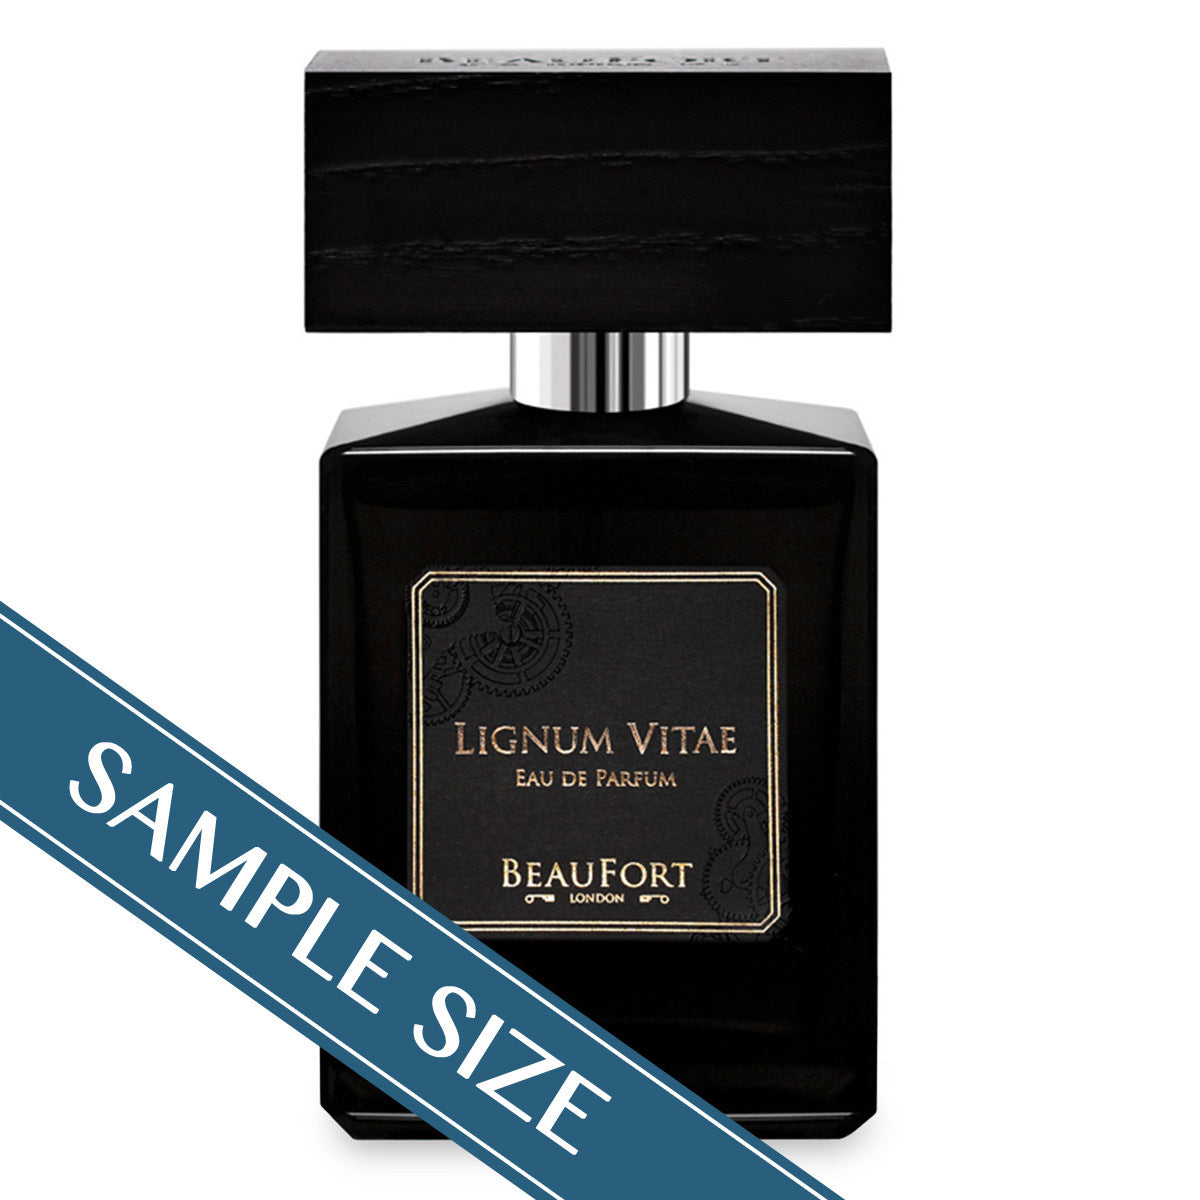 Primary image of Sample - Lignum Vitae Eau de Parfum